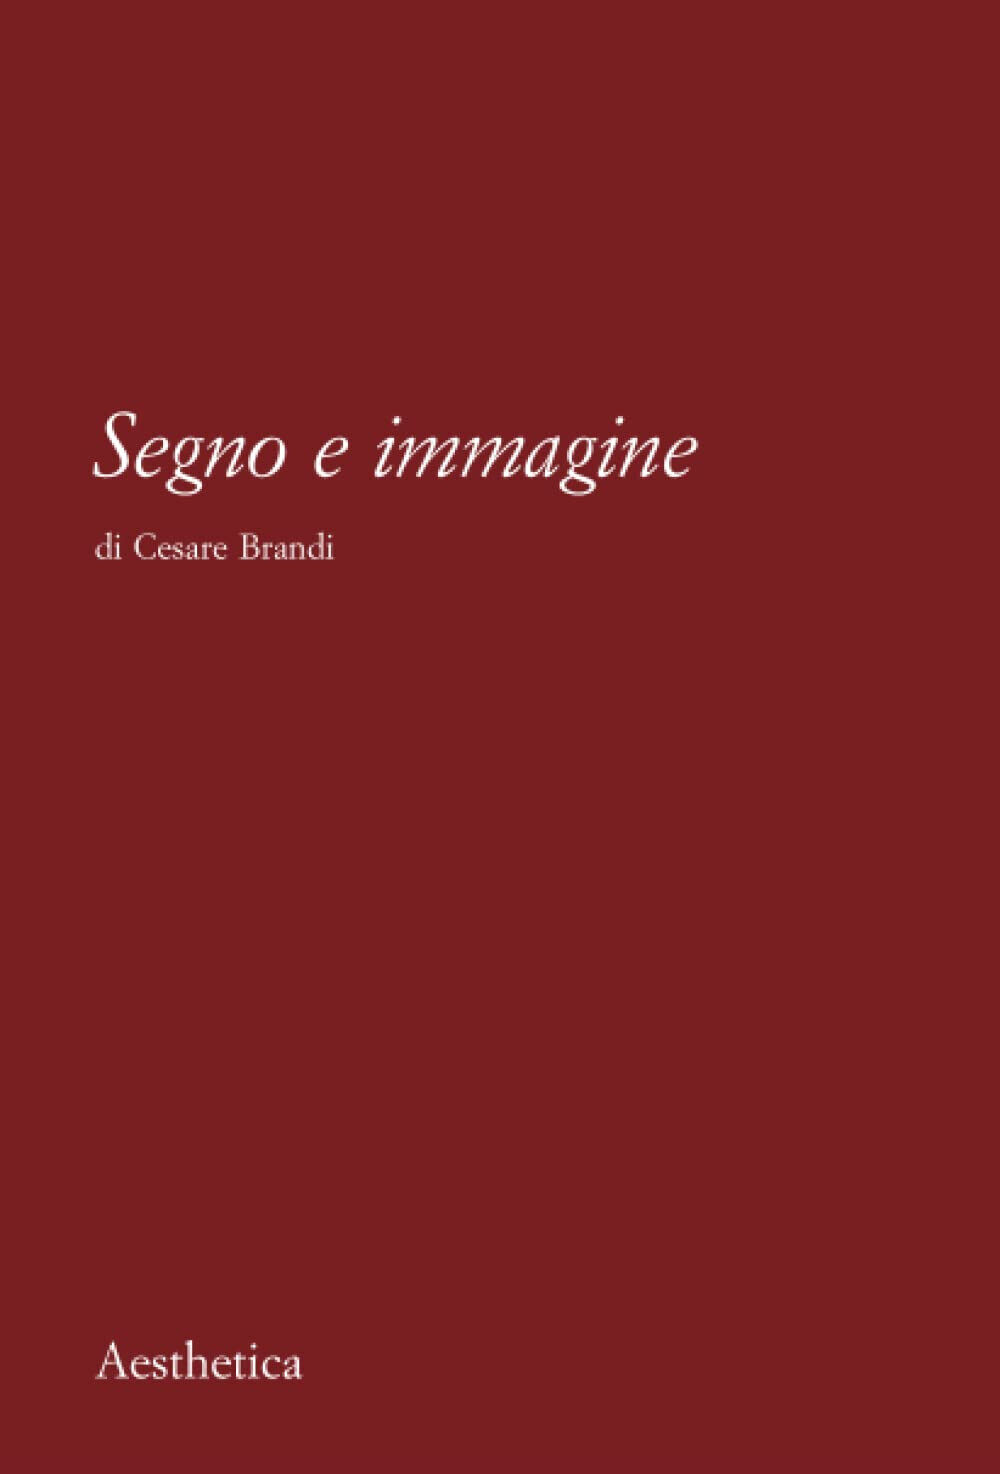 Segno e immagine - Cesare Brandi - Aesthetica, 2010